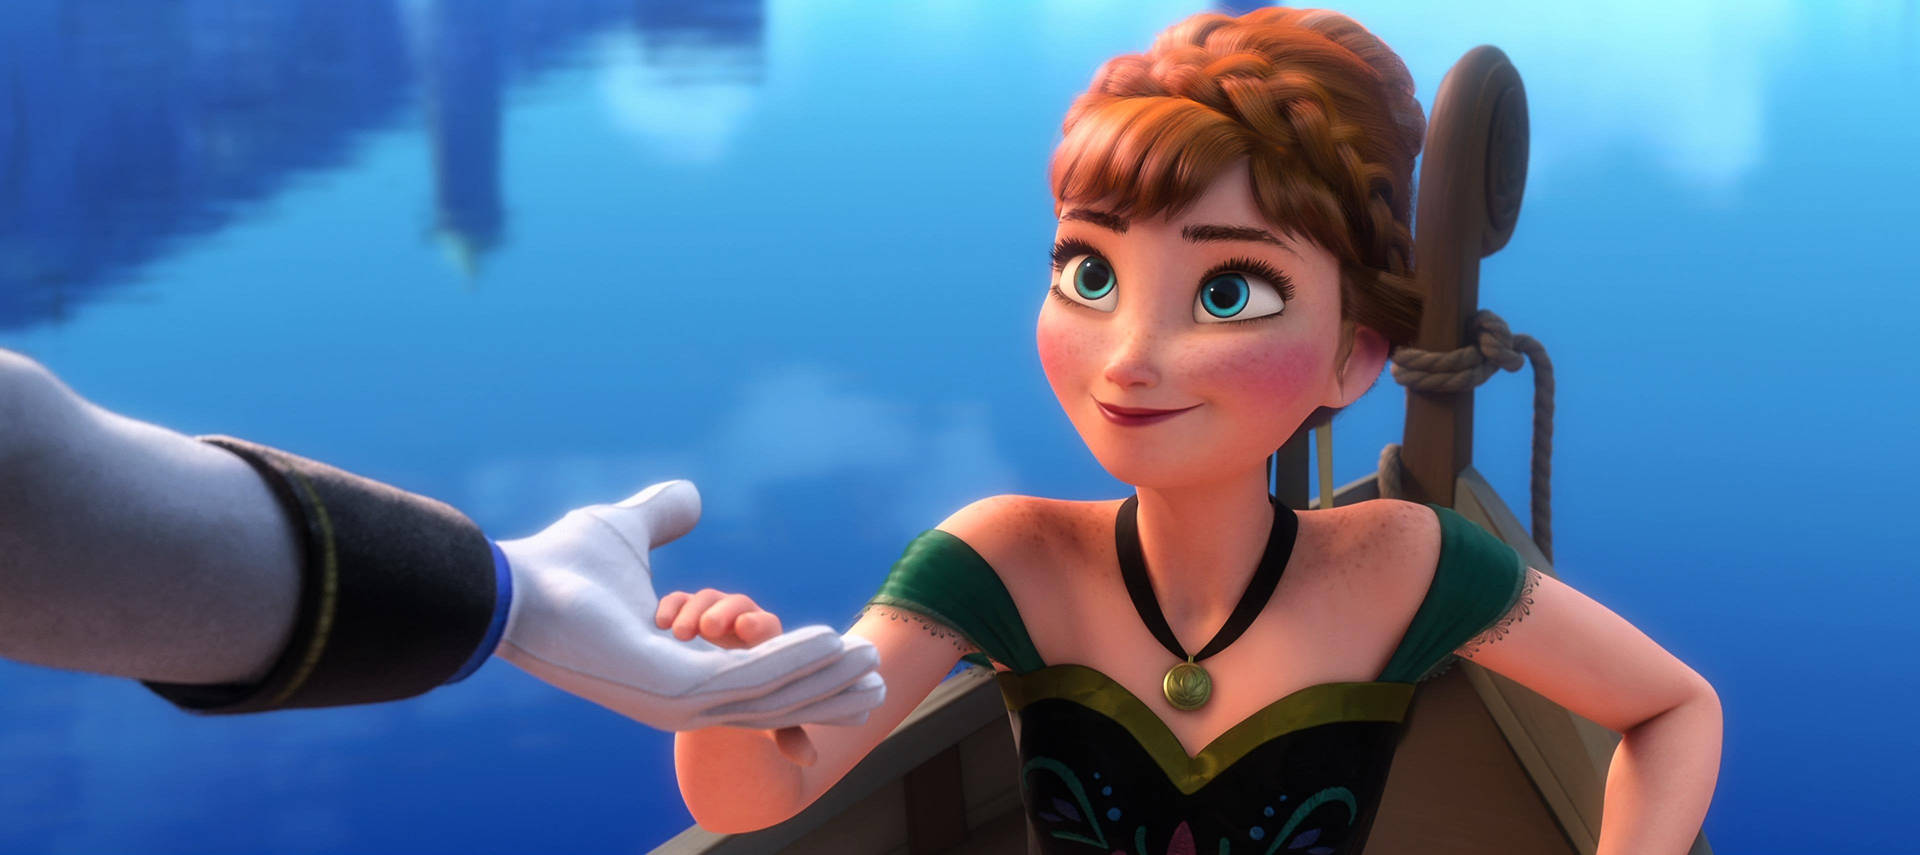 Cute Disney Princess Anna